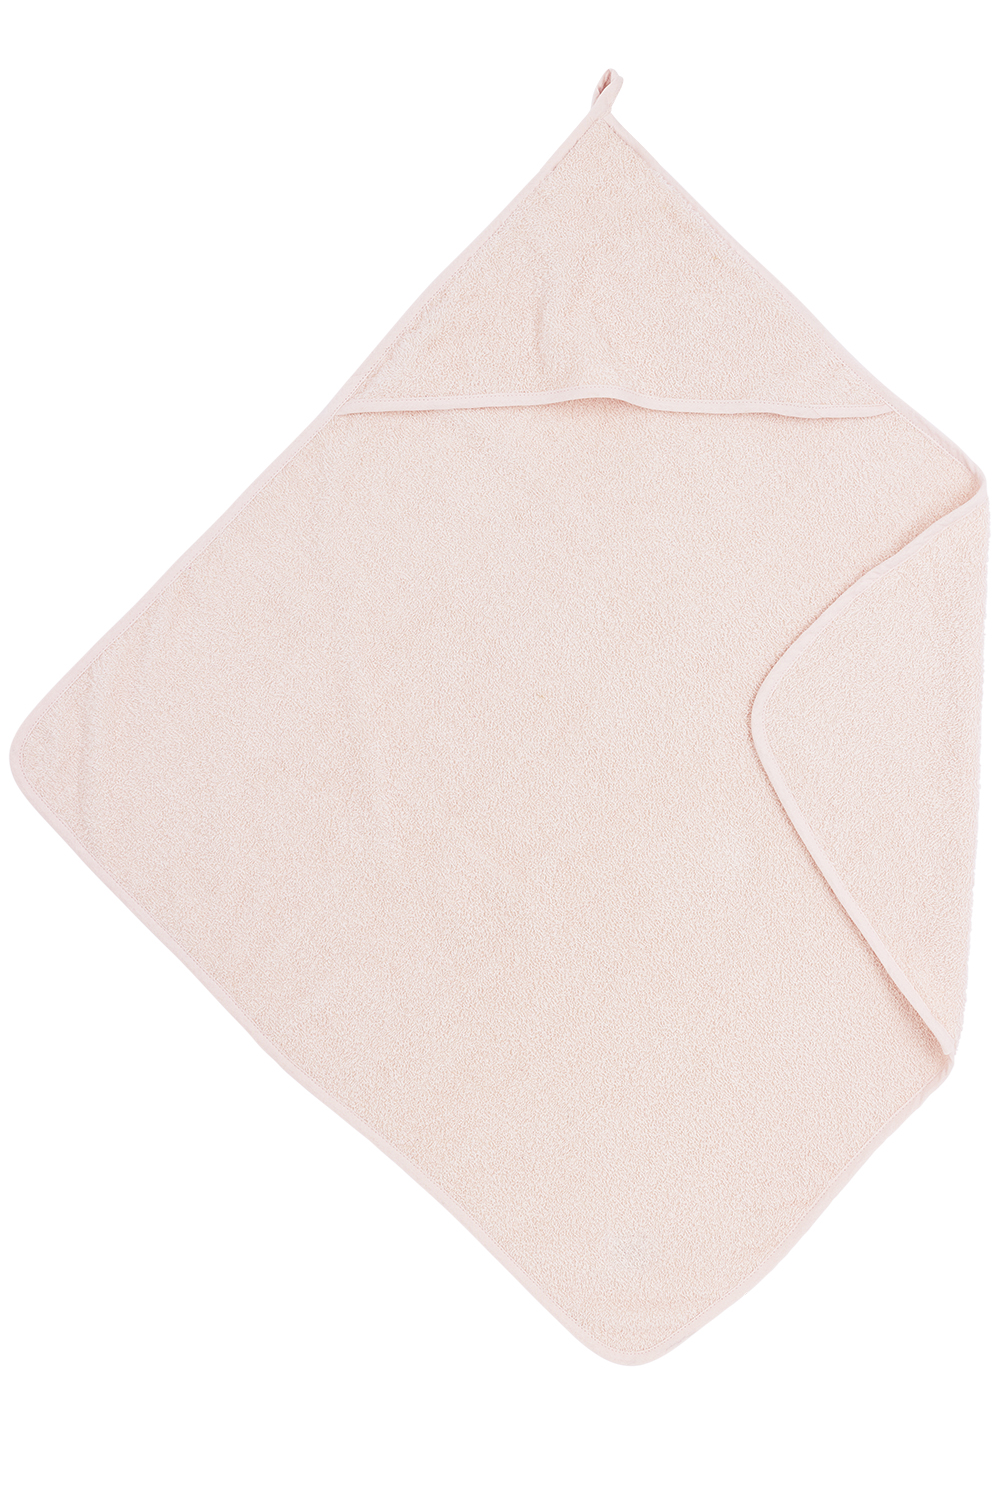 Bathcape terry Uni - soft pink - 75x75cm